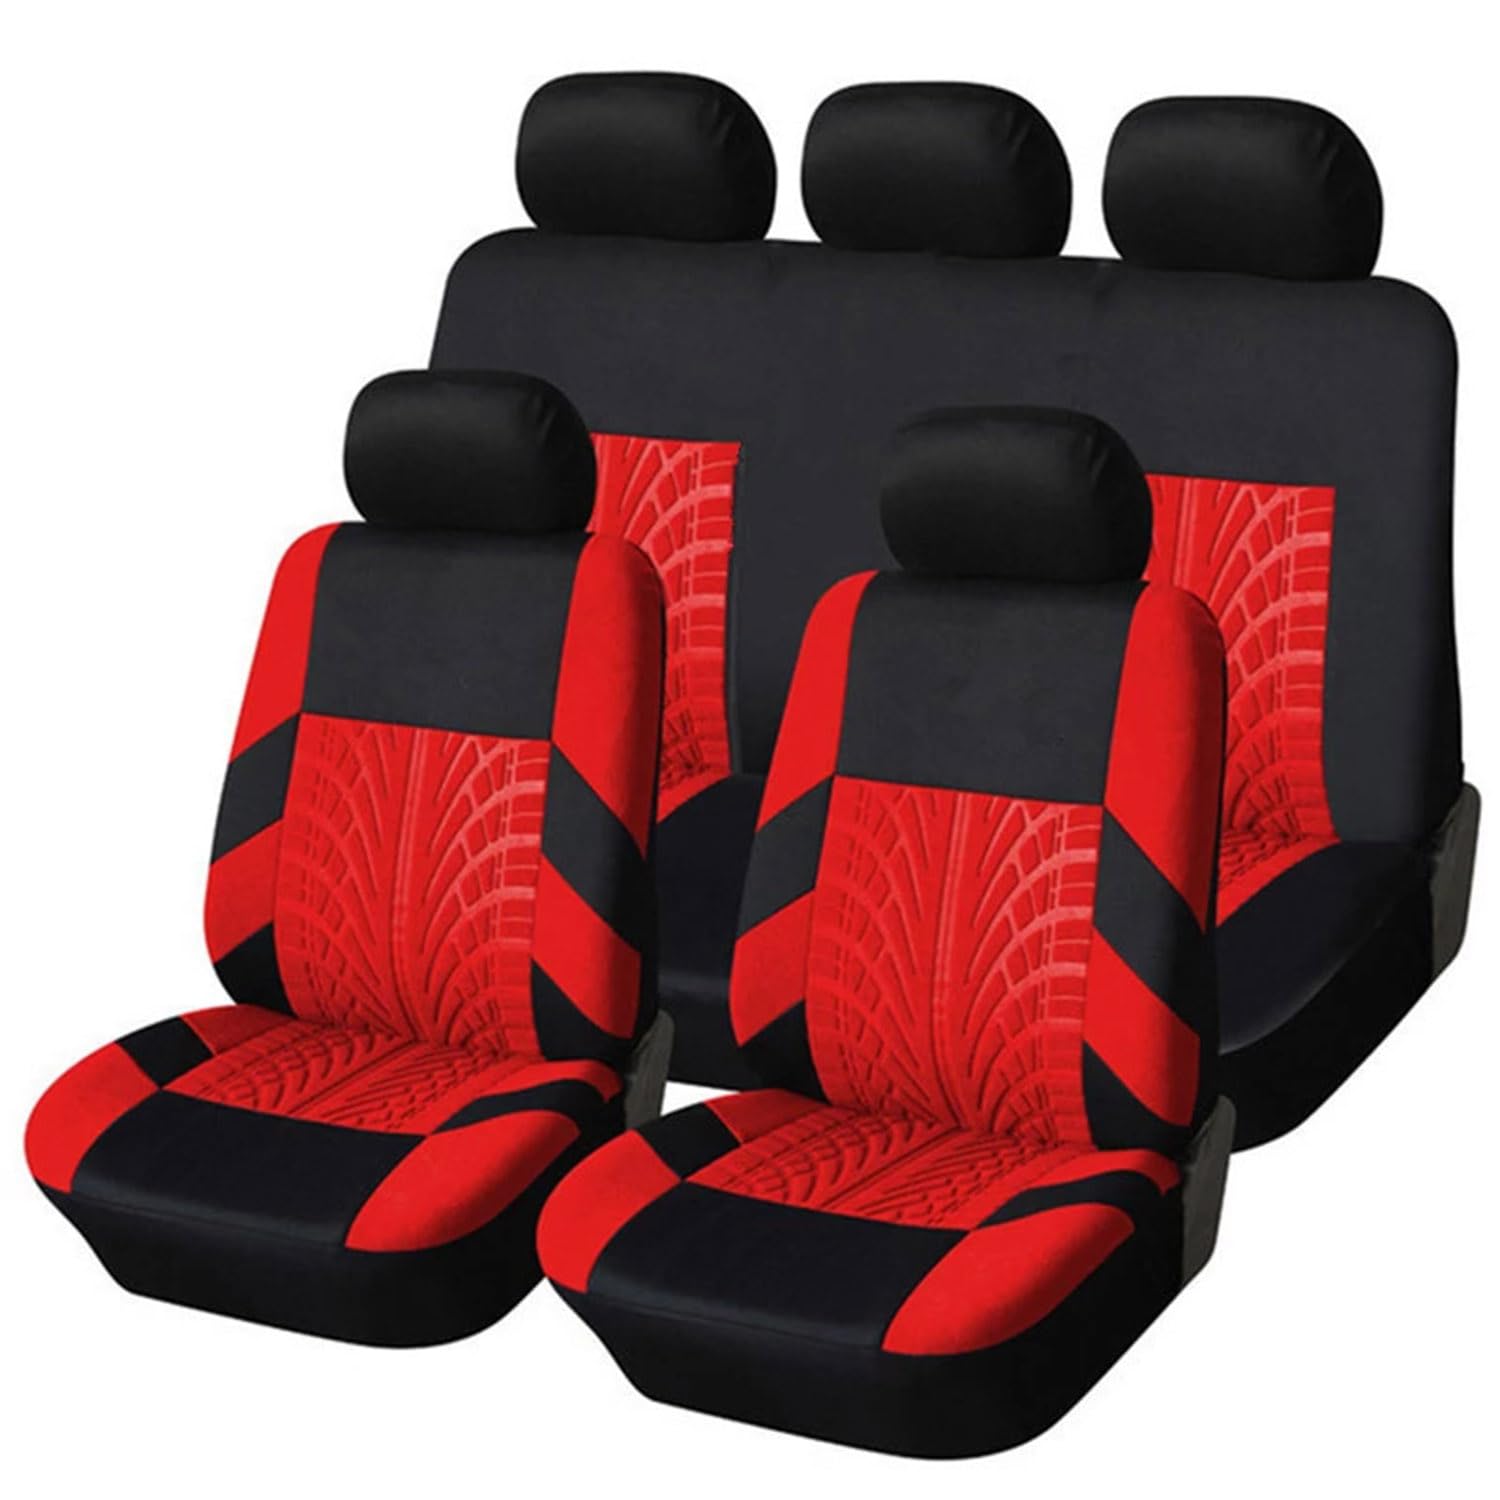 KWAYA 9 Stück Sitzbezug Auto Set für Suzuki SX4 S-Cross 2013-2018 2019 2020 2021, Langlebig Bequem Sitzschoner, Autositzbezügemit Geprägten Körnern,4 Red von KWAYA